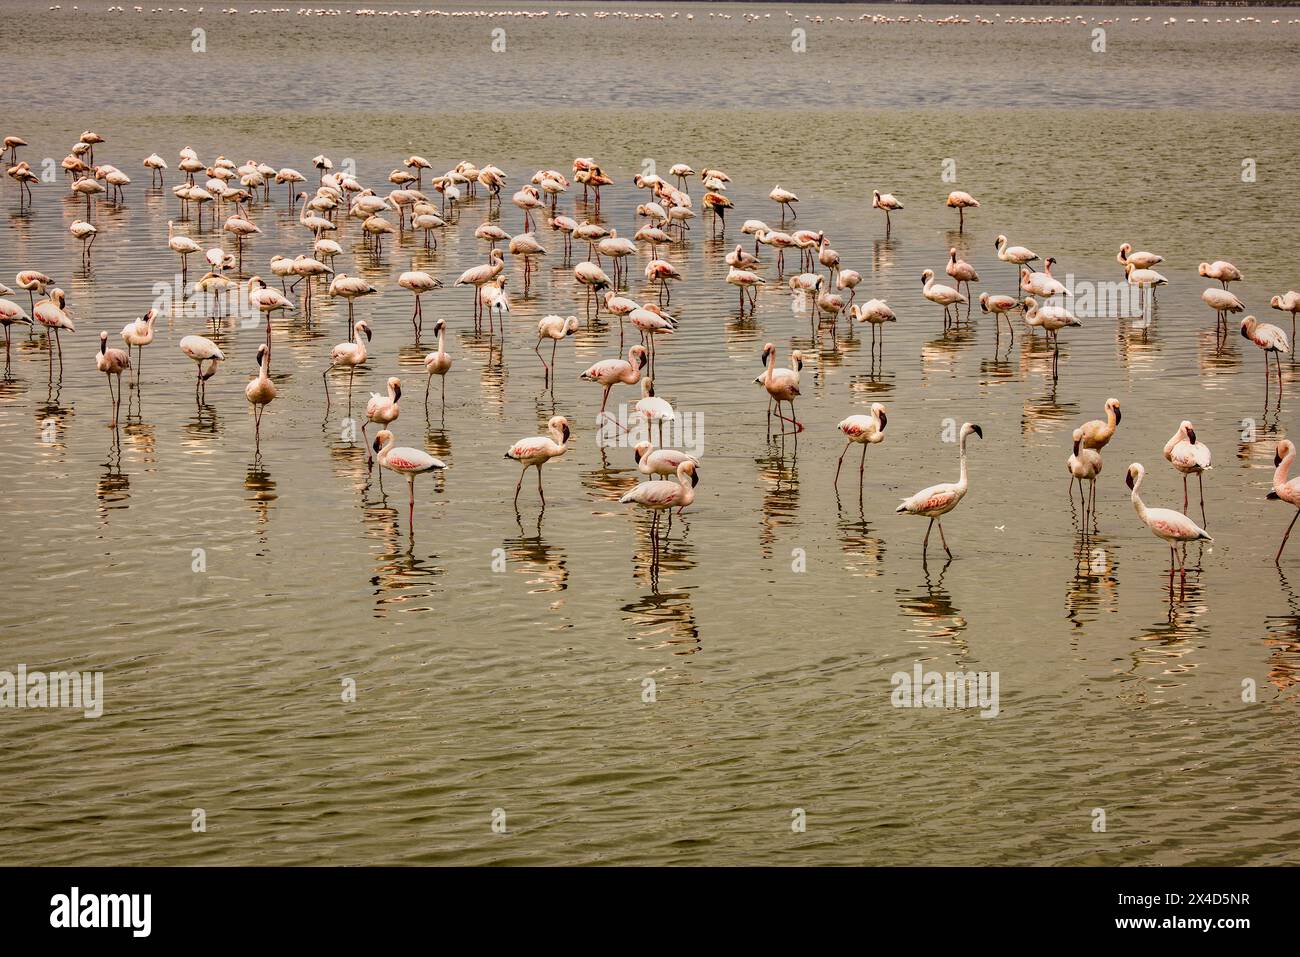 Flamingos, Amboseli National Park, Africa Stock Photo